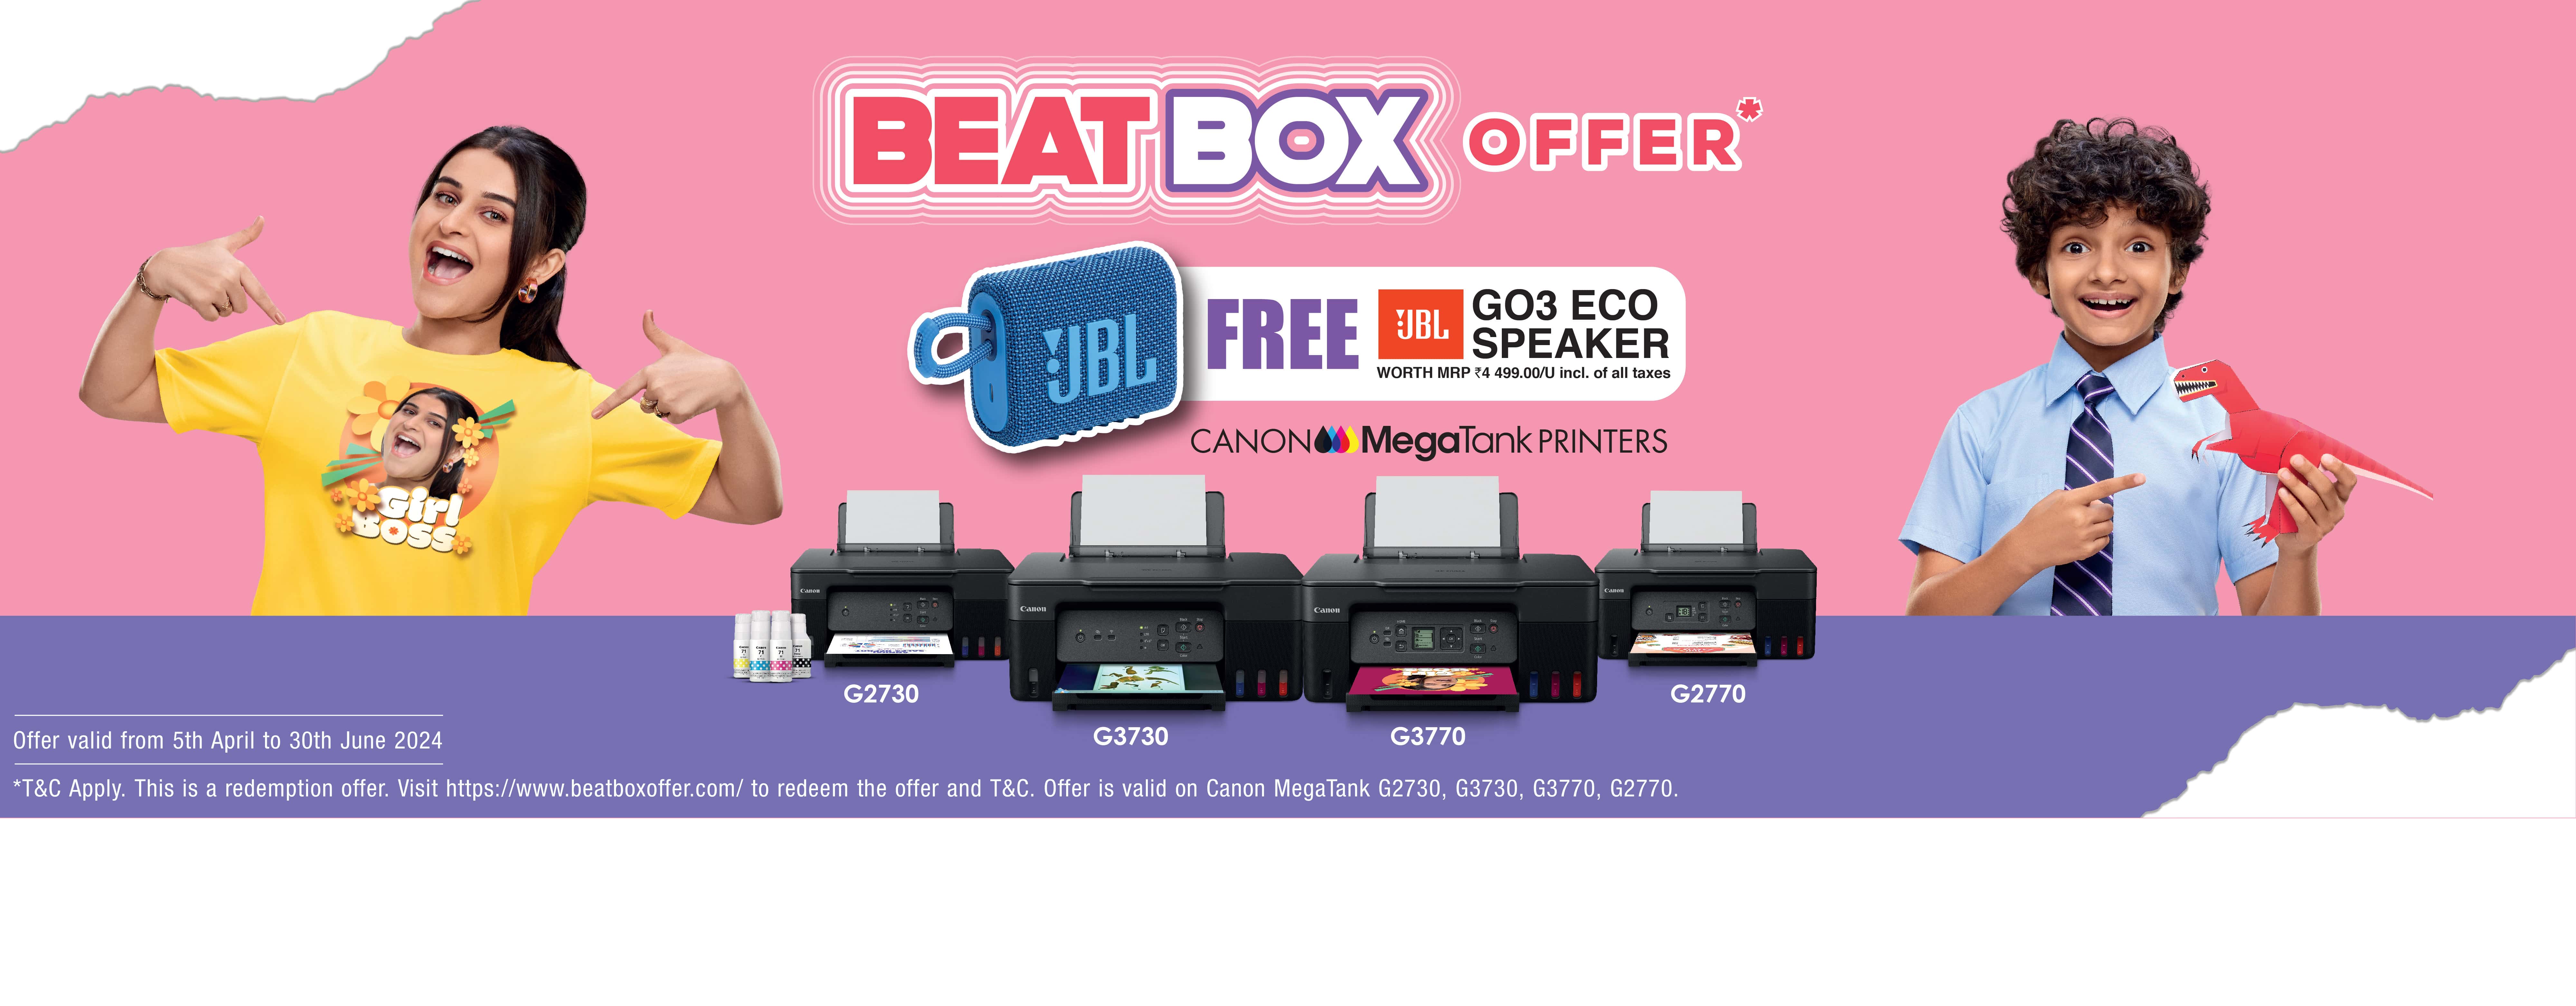 Beatbox offer